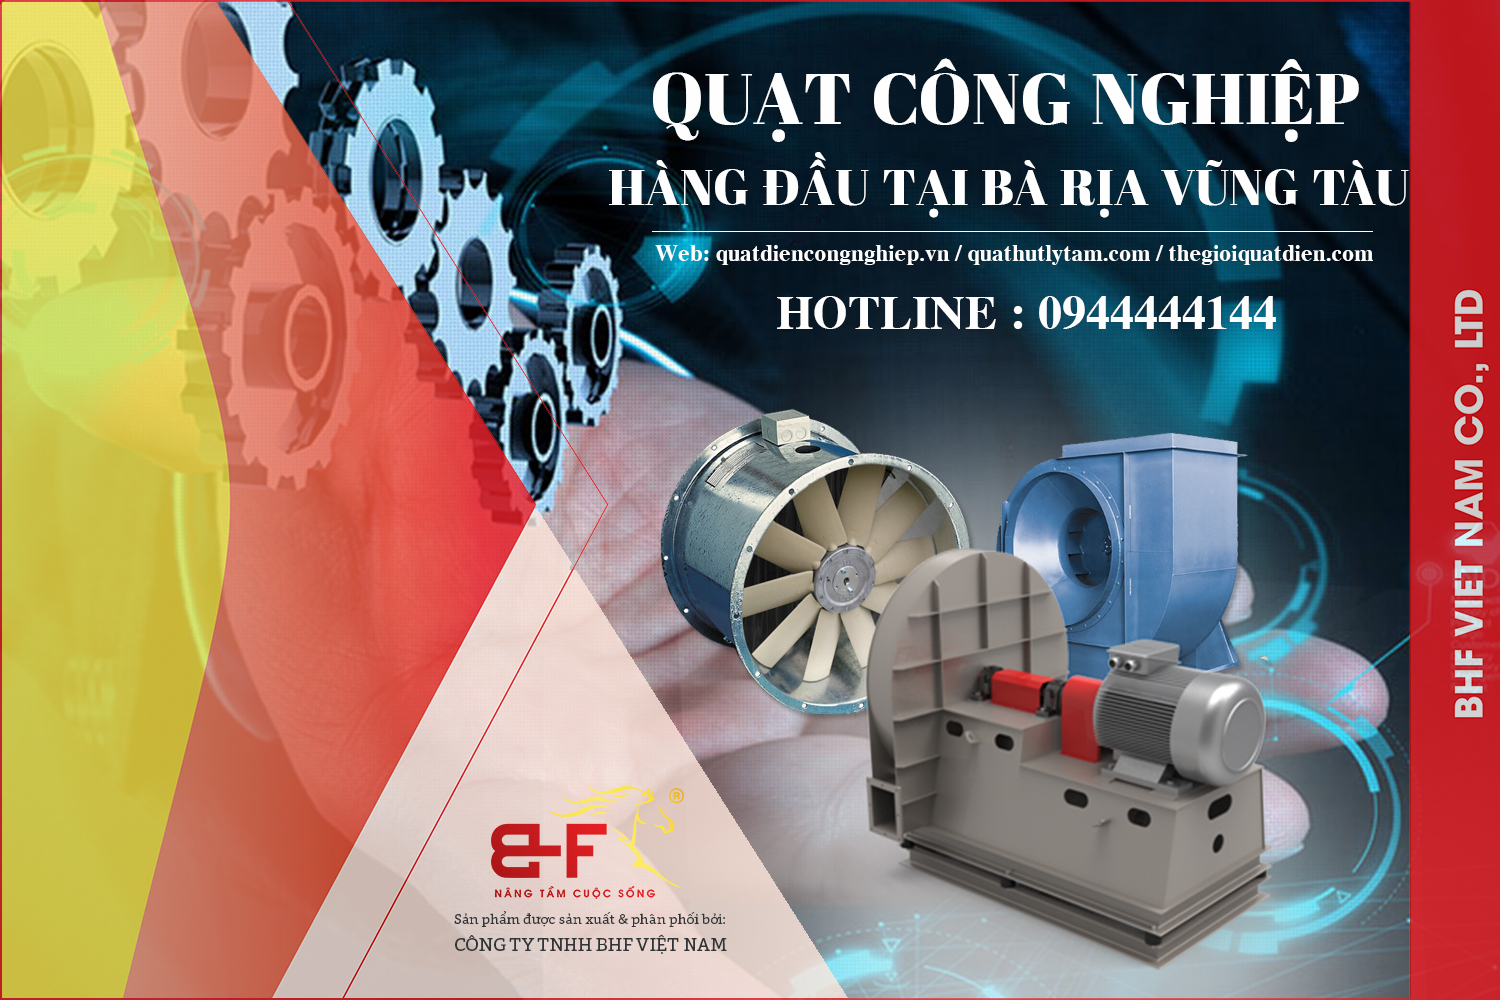 BHF Việt Nam - Công ty chuyên cung cấp và phân phối quạt công nghiệp tại Bà Rịa Vũng Tàu